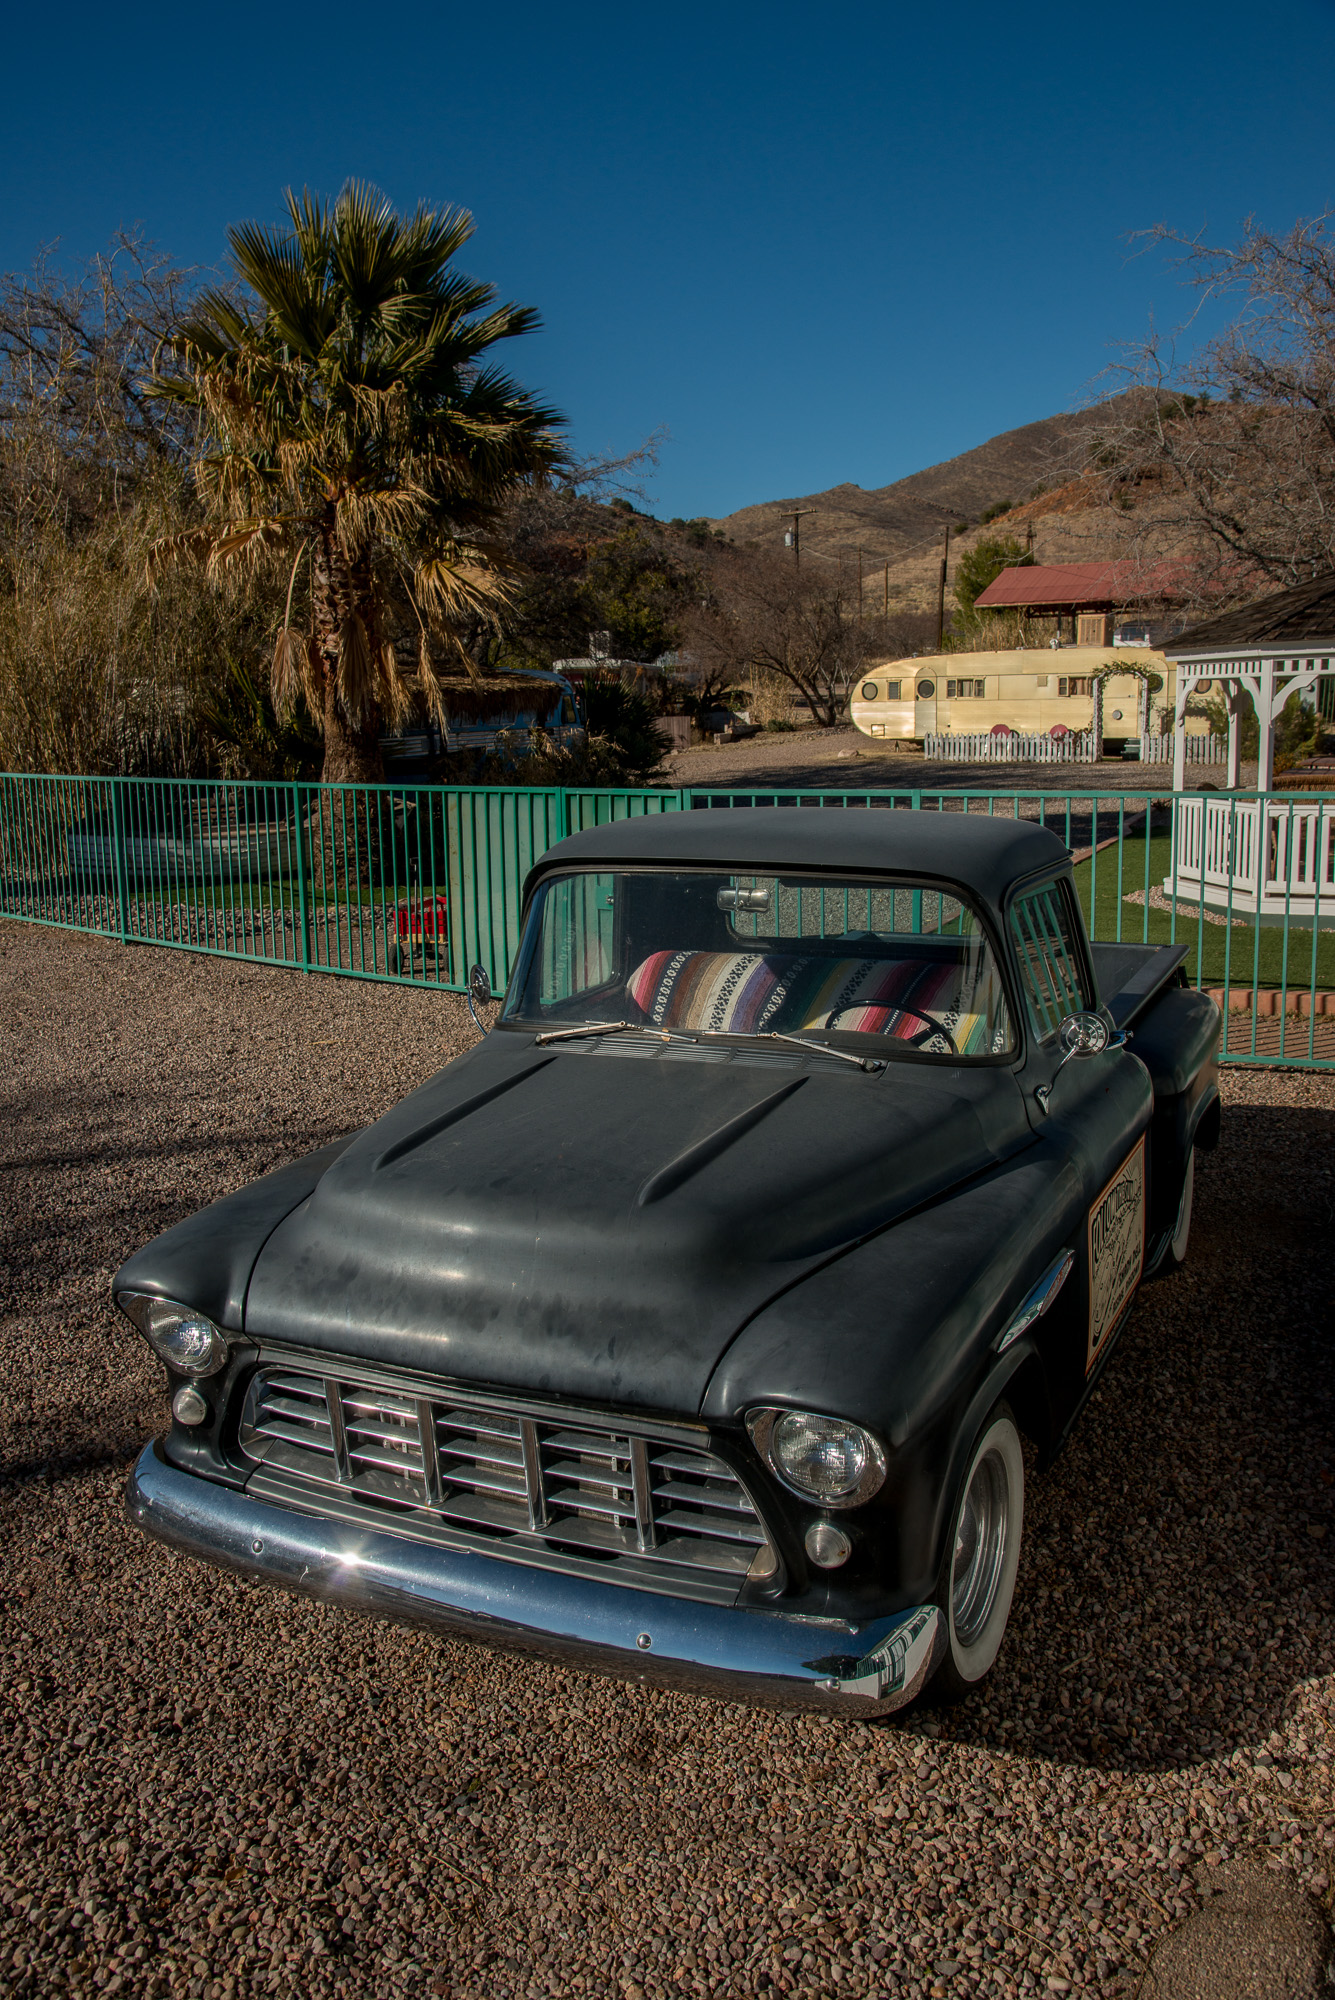 Shady Dell Trailer Park. Une voiture de collection et en arrière-plan, une caravane des années 60.